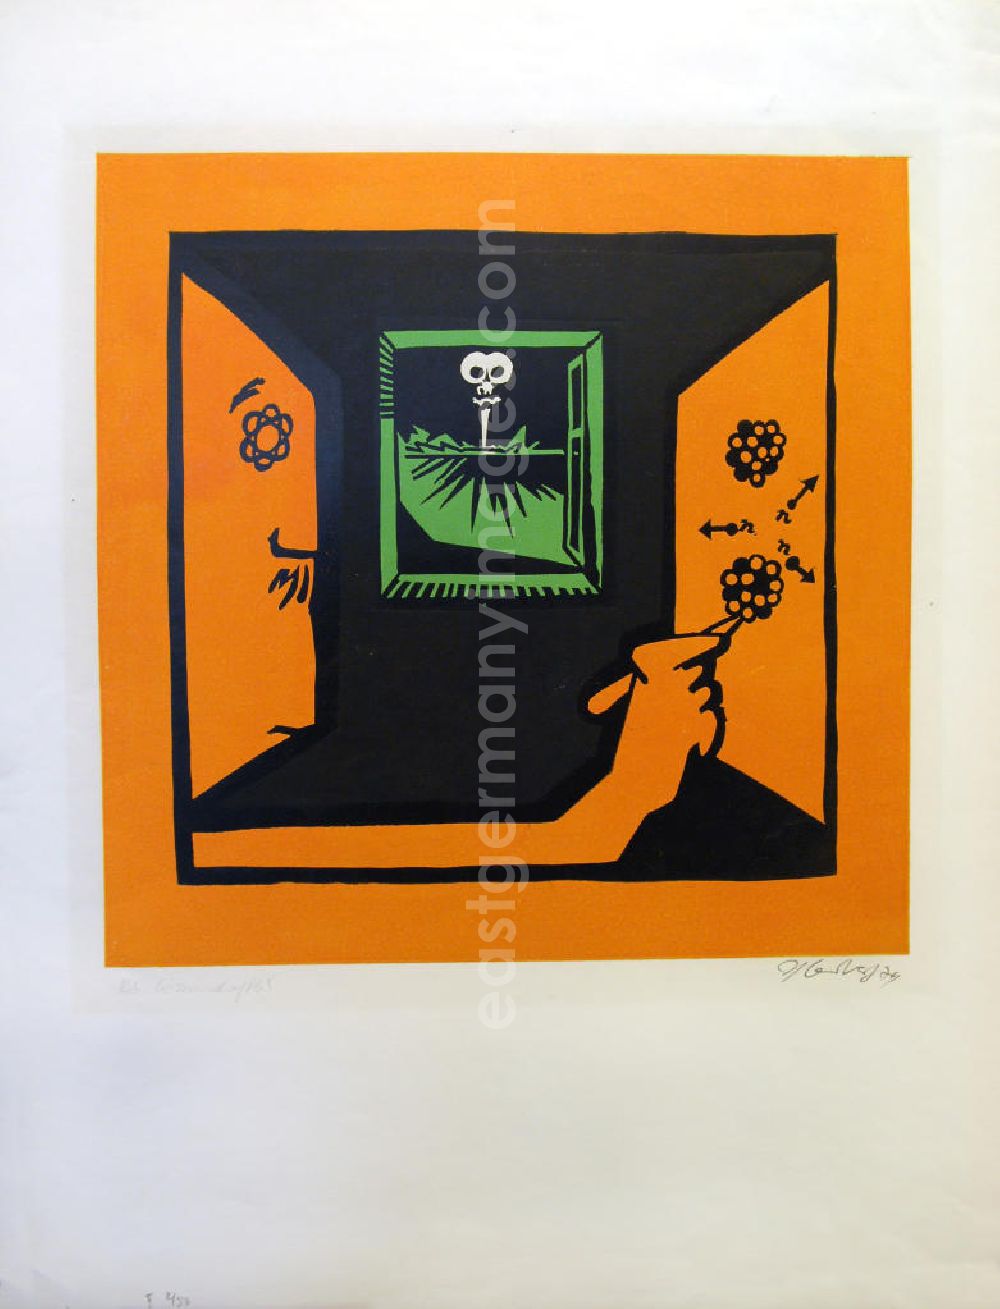 GDR image archive: Berlin - Grafik von Herbert Sandberg Der Wissenschaftler aus dem Zyklus Die farbige Wahrheit mit 10 Farbdrucken (Linol- und Decelithschnitte) aus dem Jahr 1974, 34,0x34,0cm handsigniert, II 2/5